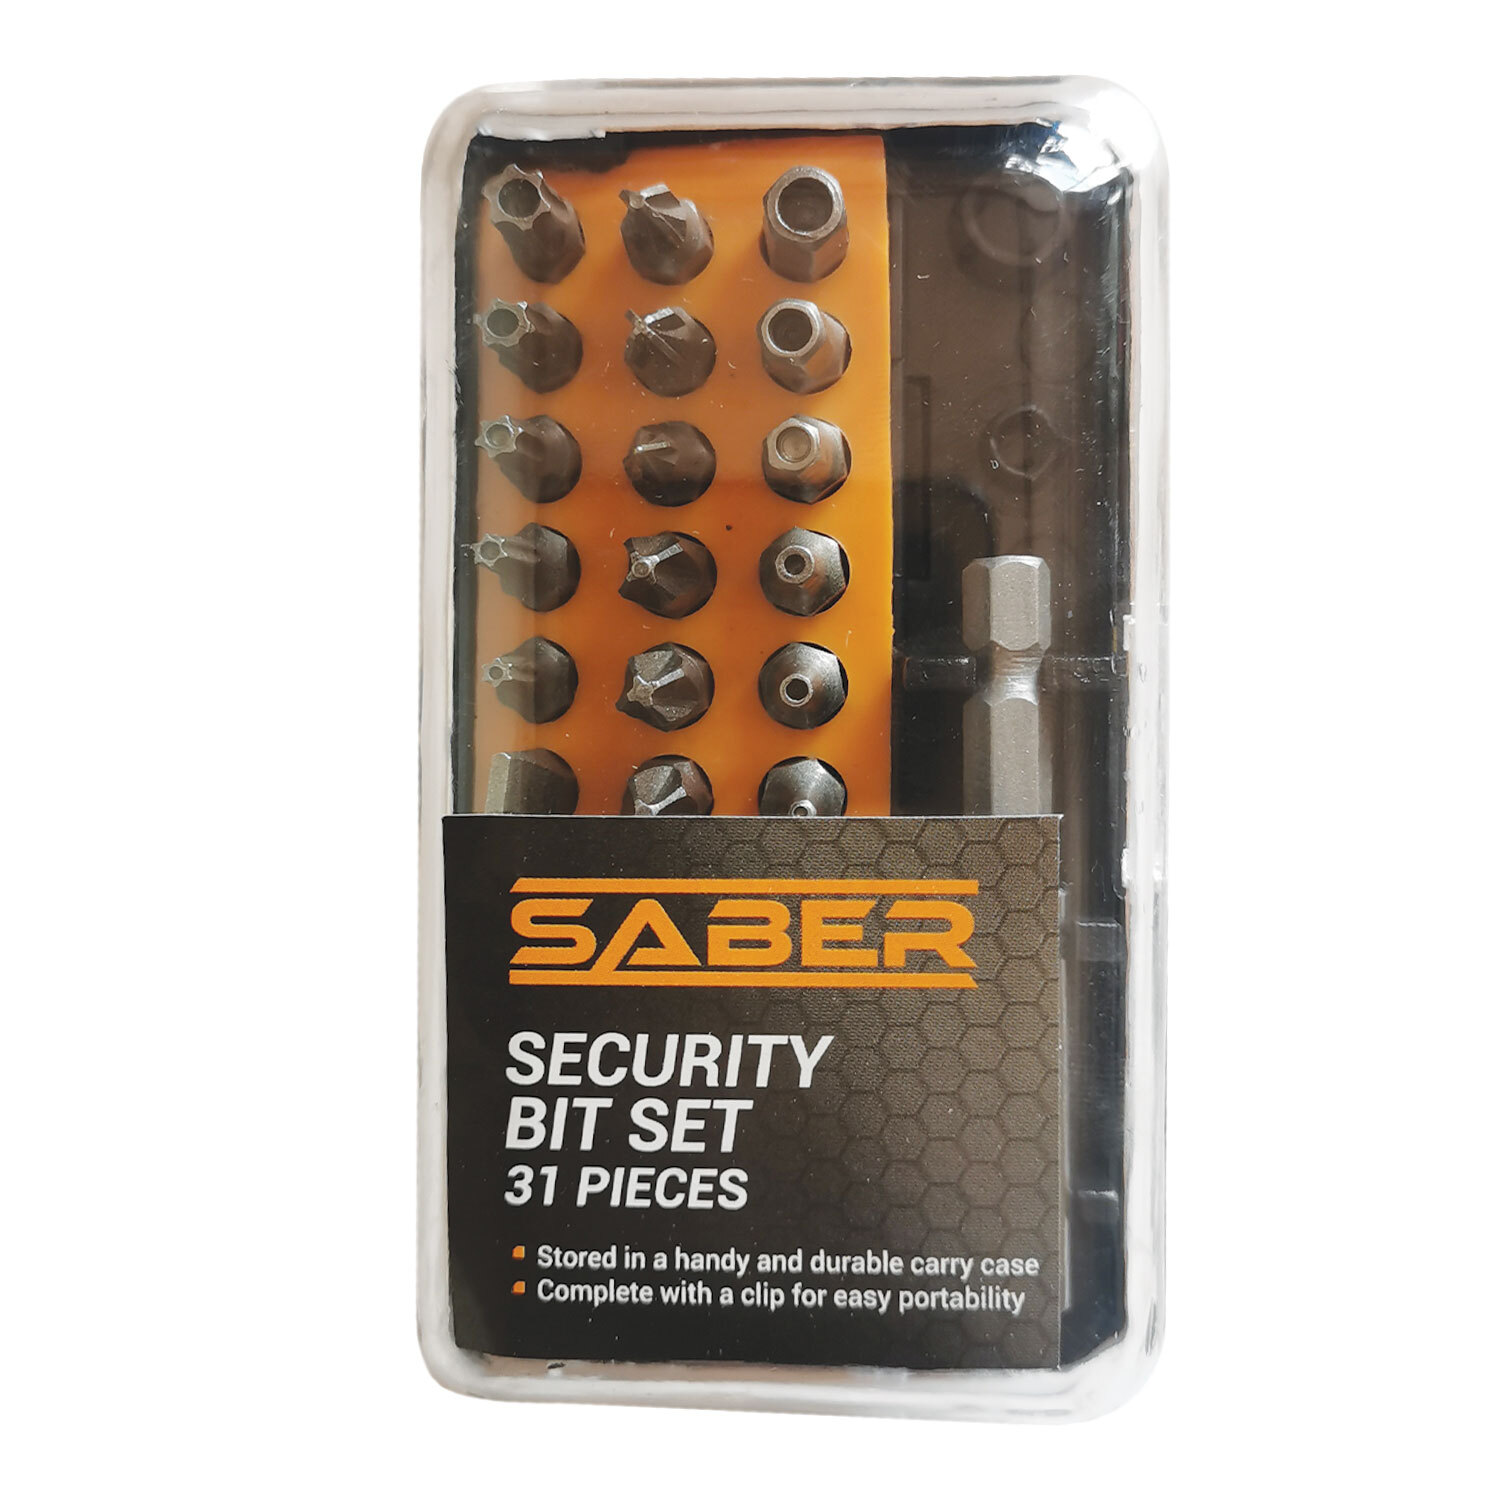 Saber 31 Piece Security Bit Set Image